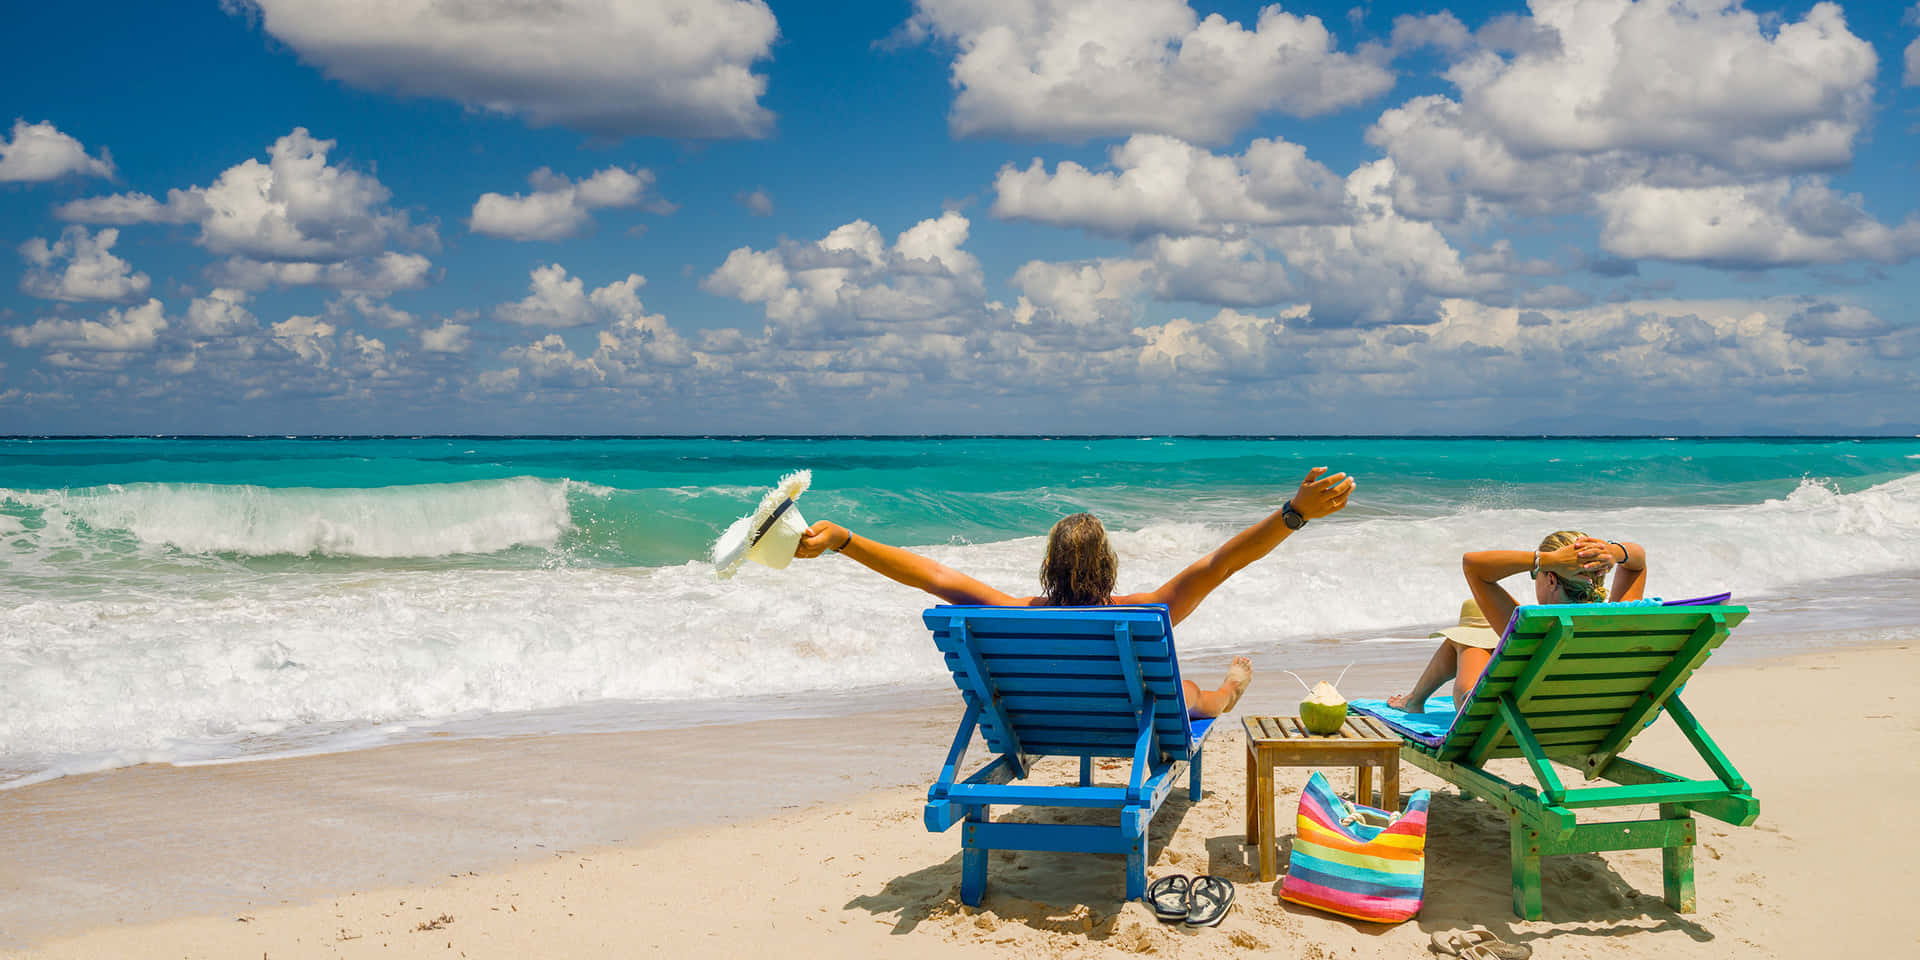 Entspannensie Sich Und Genießen Sie Die Atemberaubenden Ausblicke Auf Den Sommerurlaub.